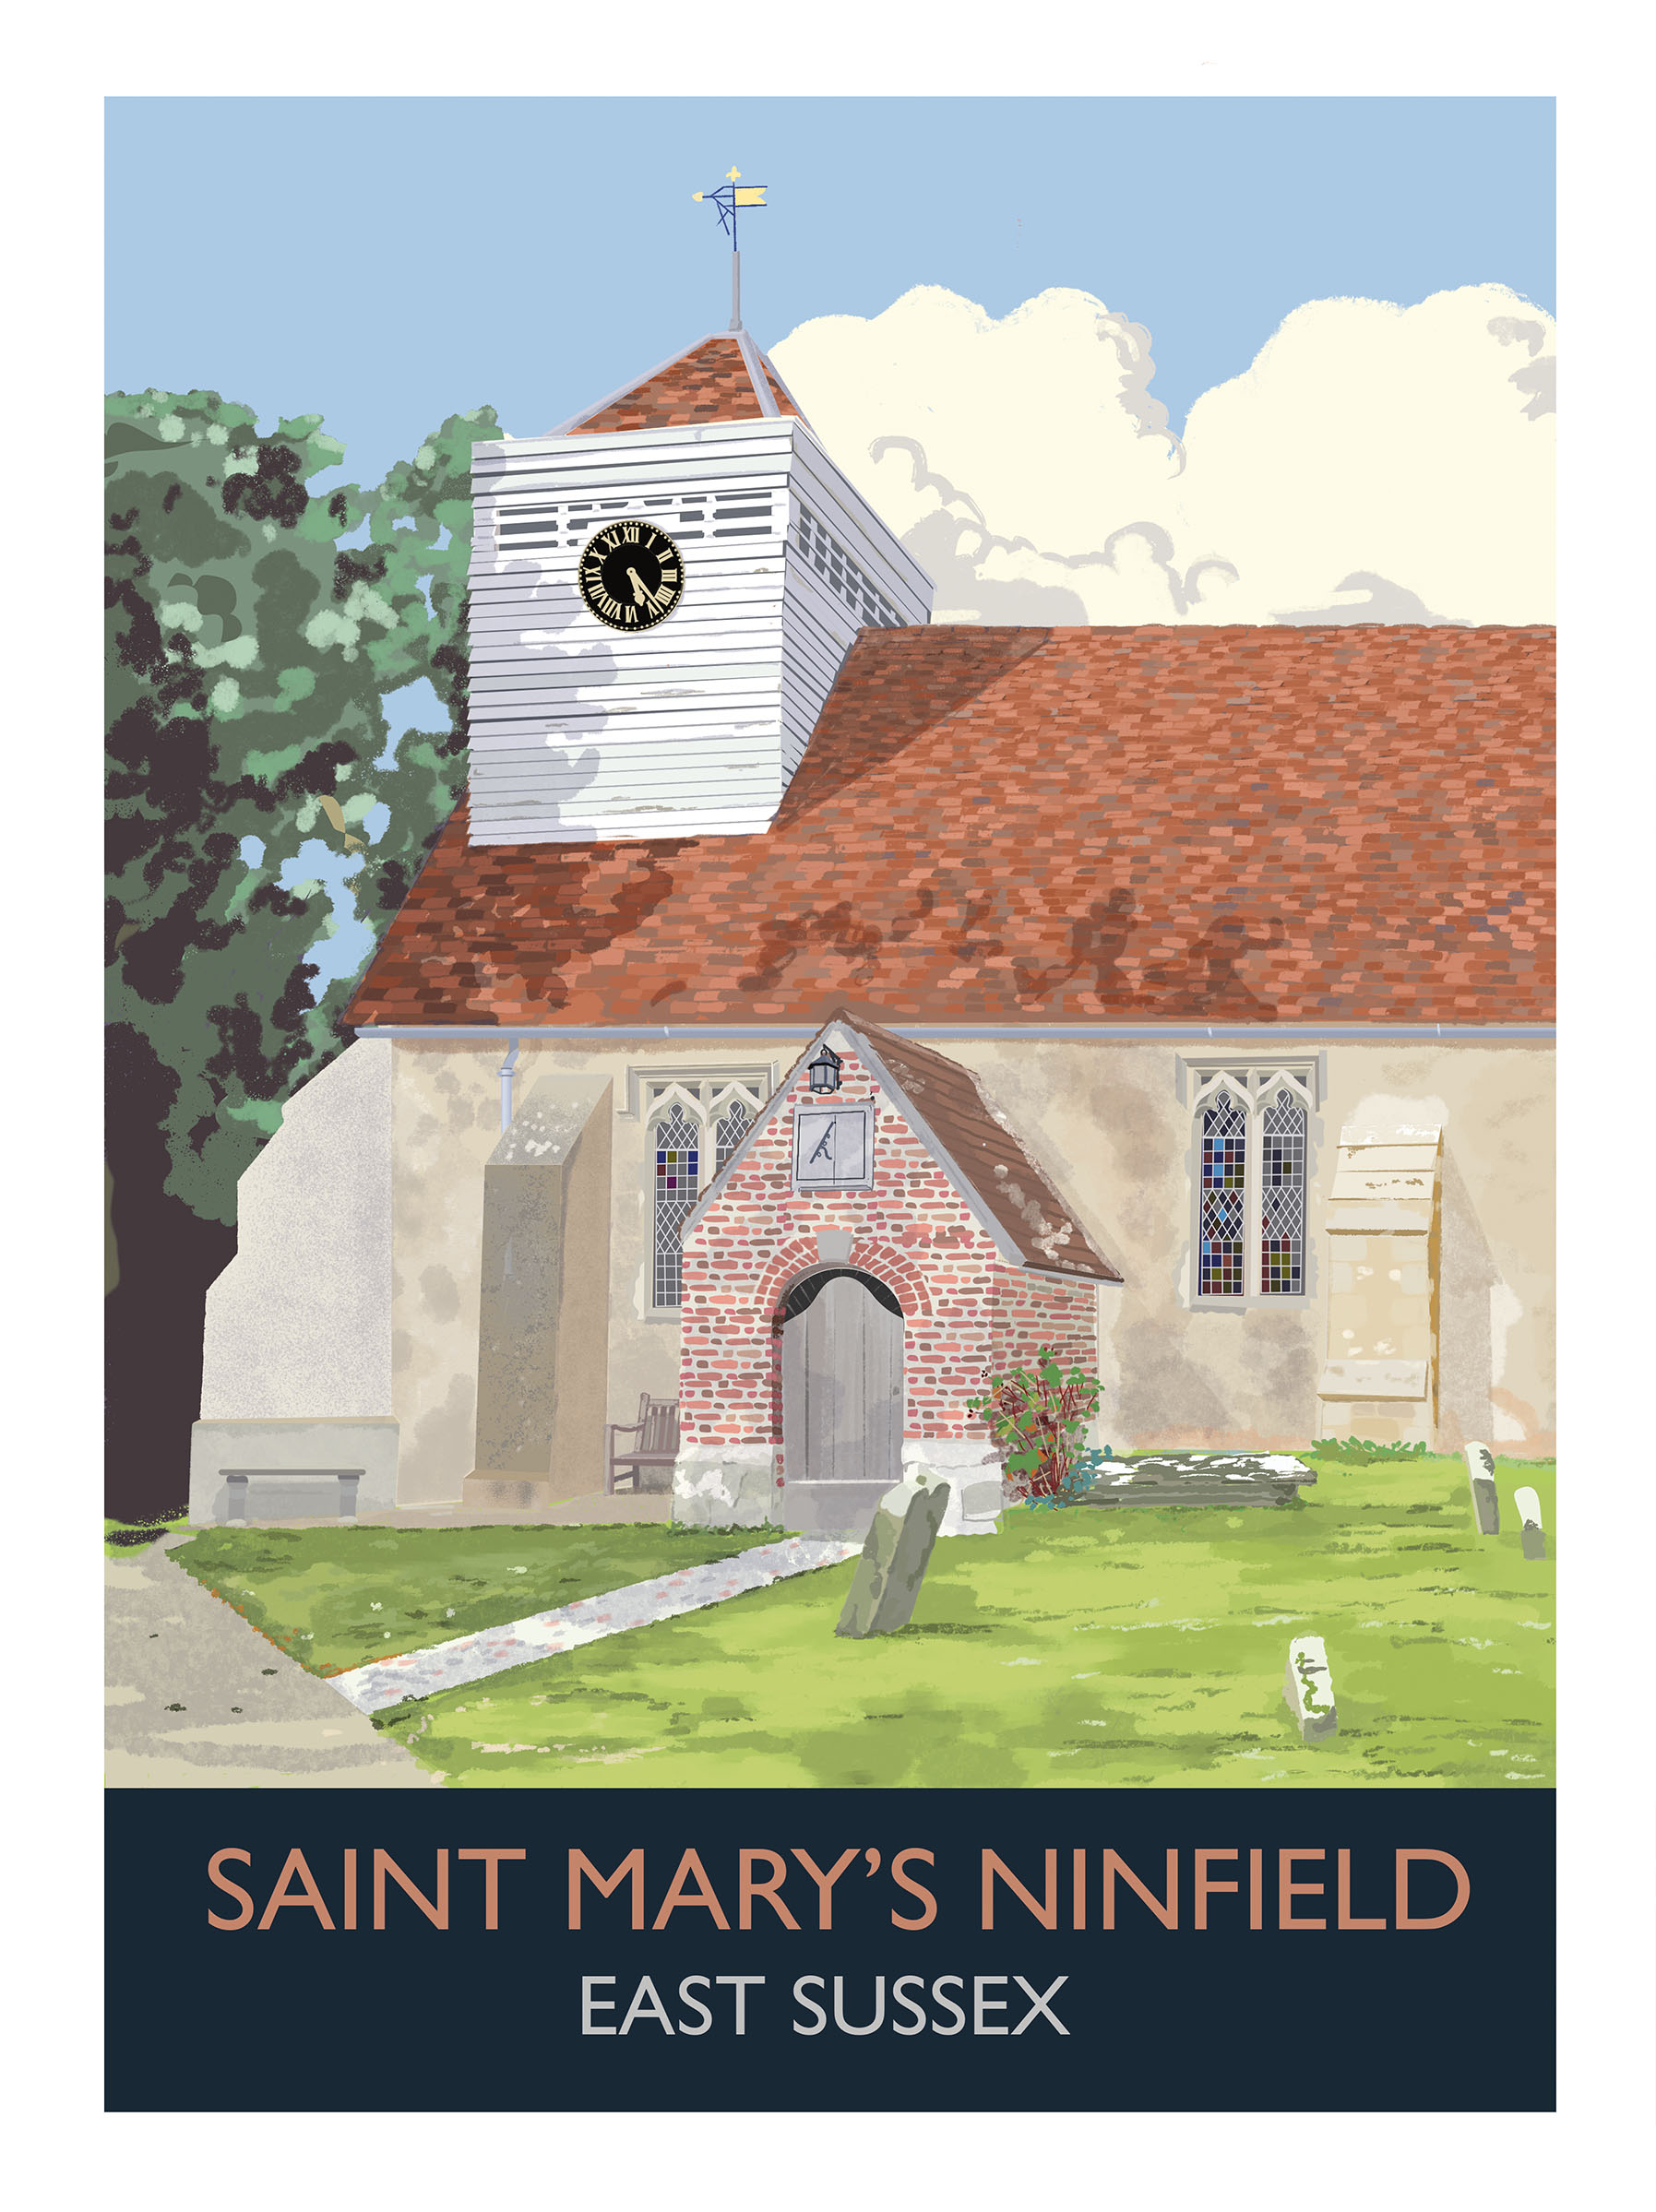 St Mary's Ninfield